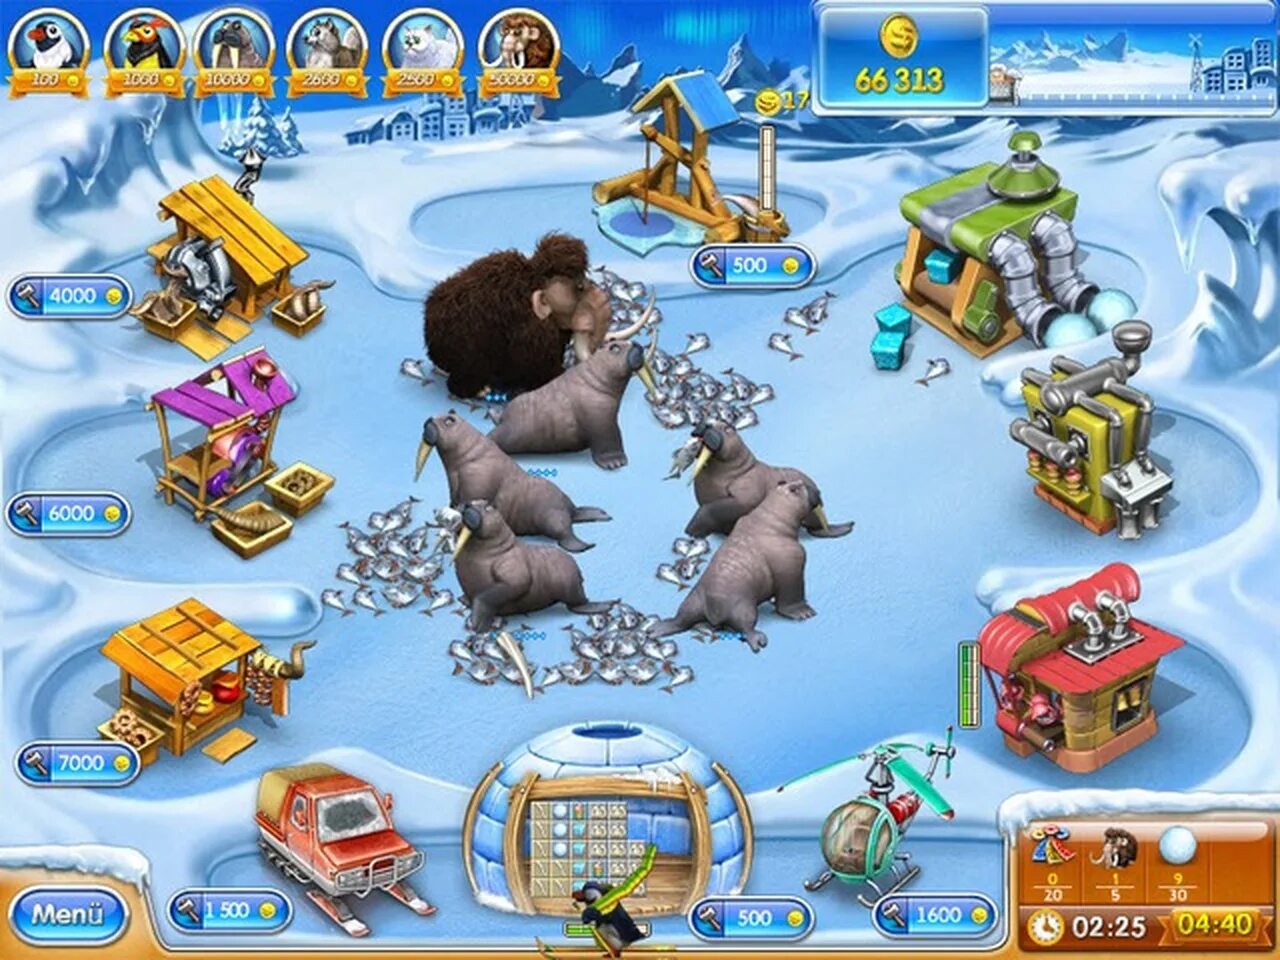 Бесплатная игра веселая ферма 3. Веселая ферма 3 ледниковая Эра. Игра Farm Frenzy 3 Ice age. Весёлая ферма 3 Ледниковый период награды. Весёлая ферма 3 Ледниковый период.